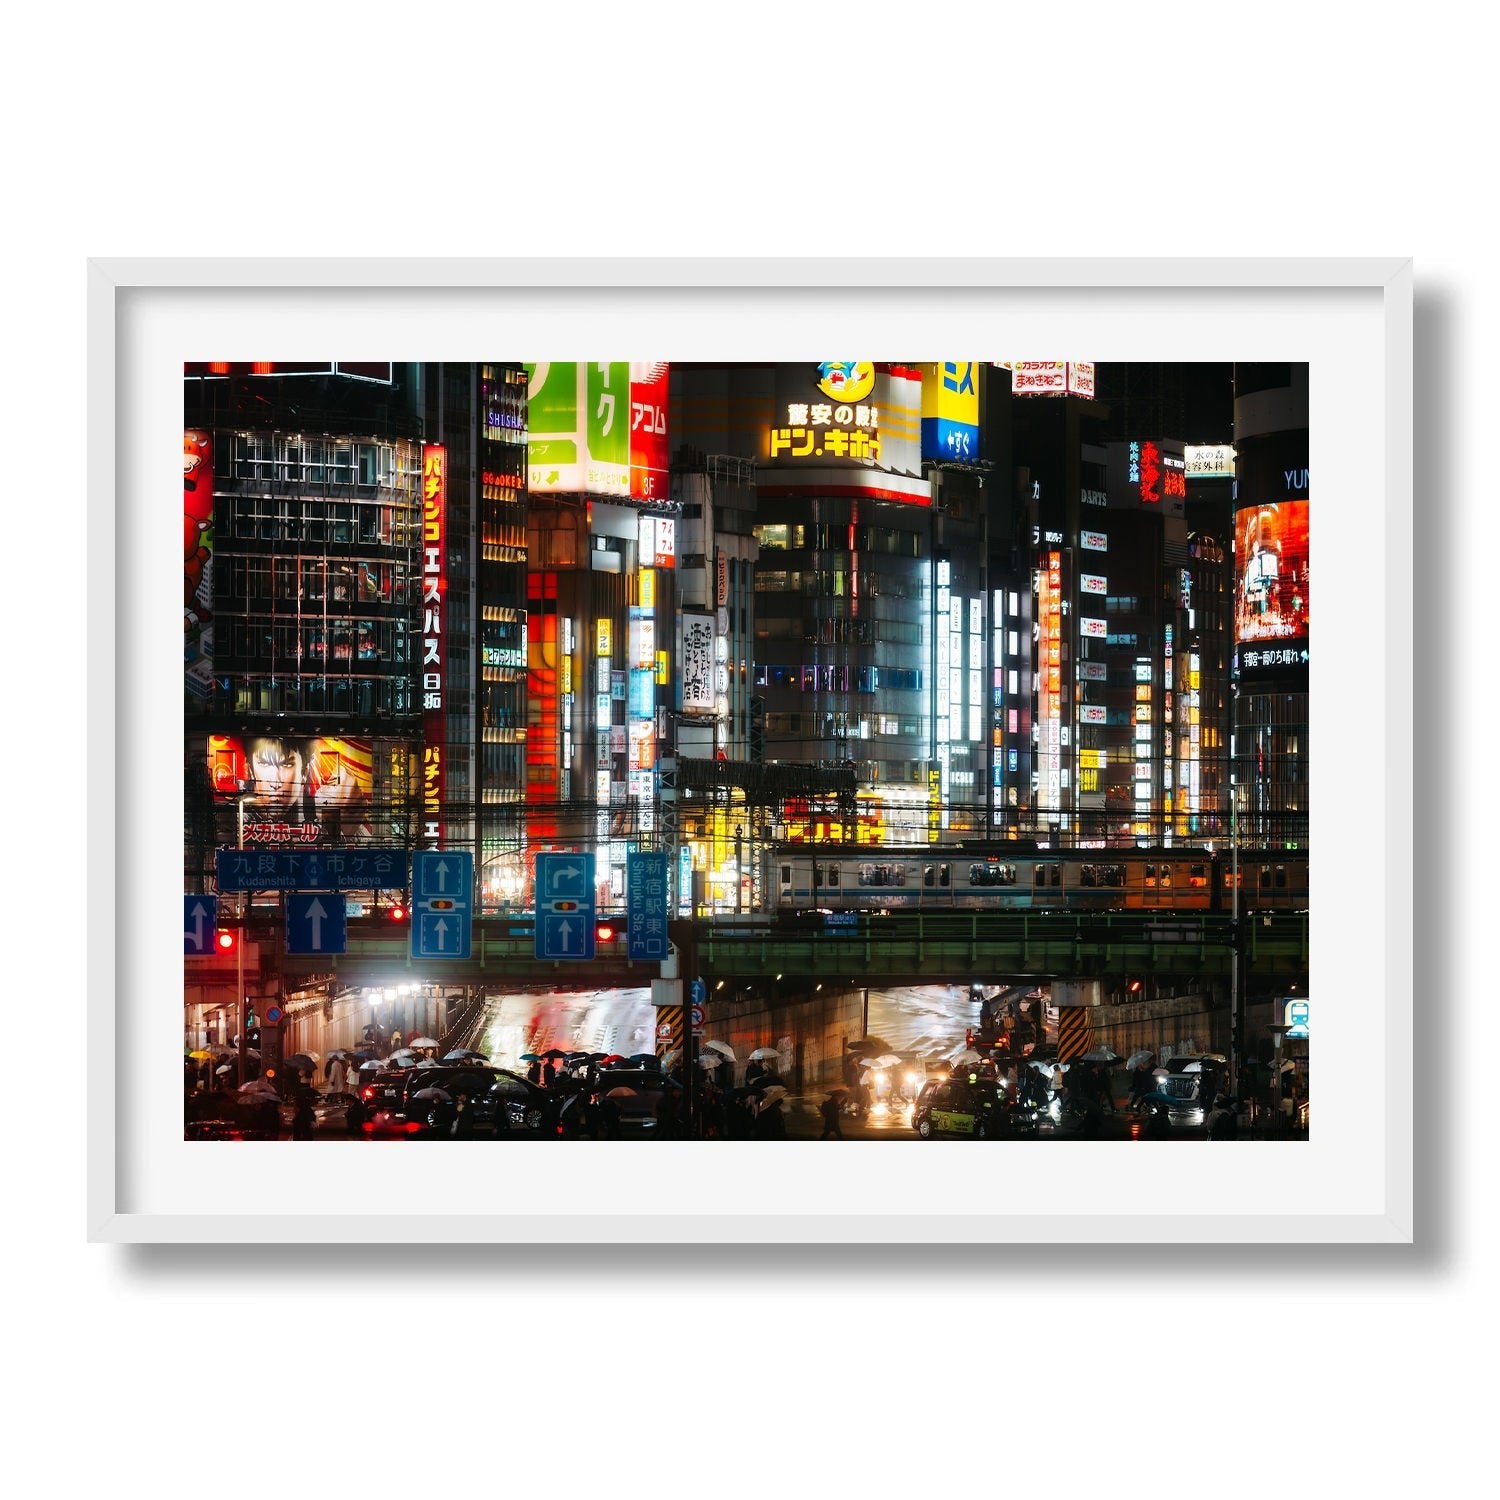 One rainy night in Shinjuku - Peter Yan Studio